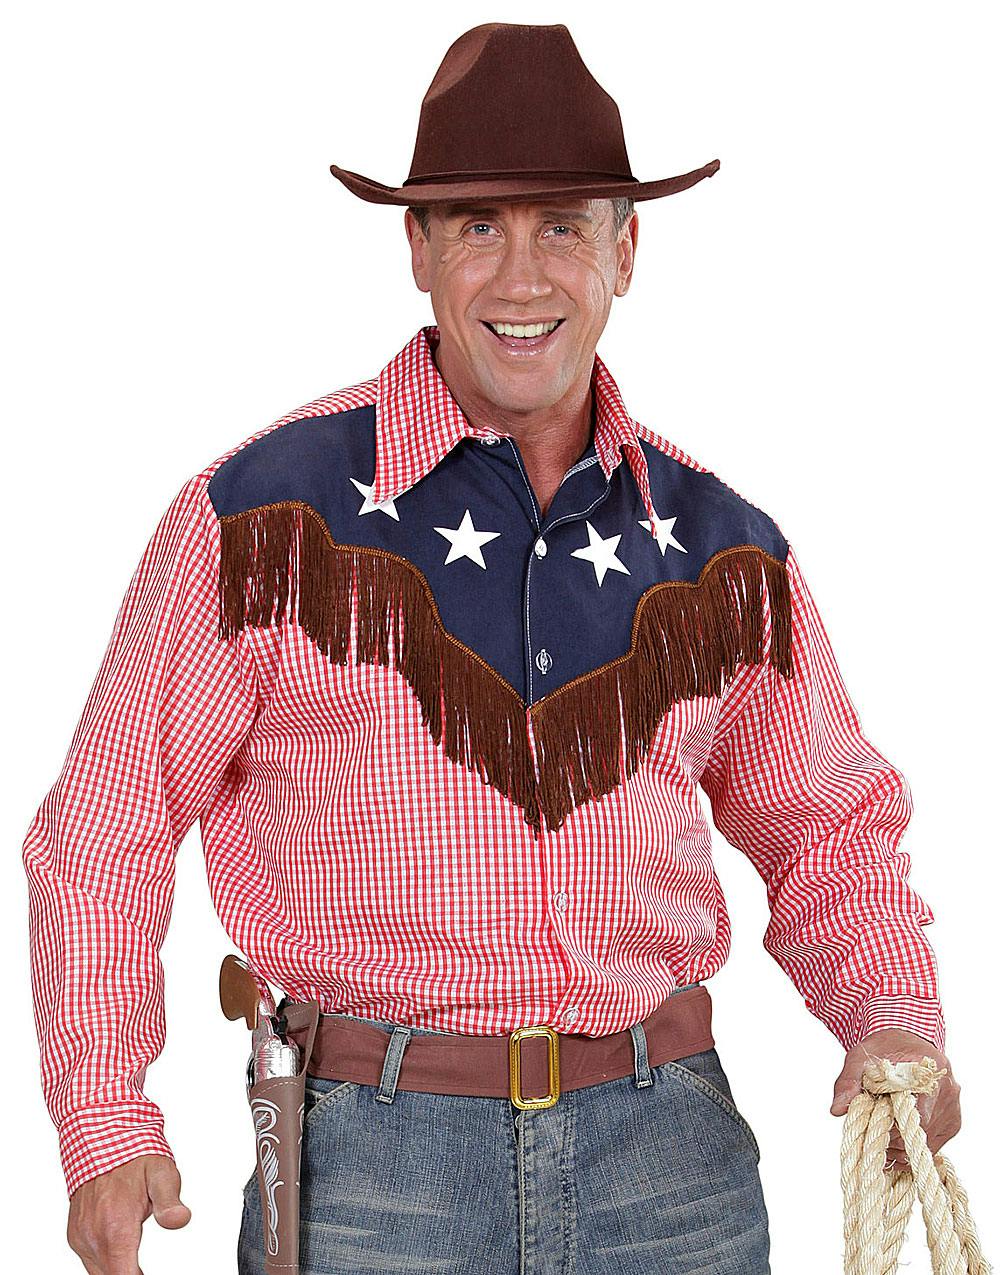 241692-rodeo-cowboy-kostymeskjorte.jpg?a